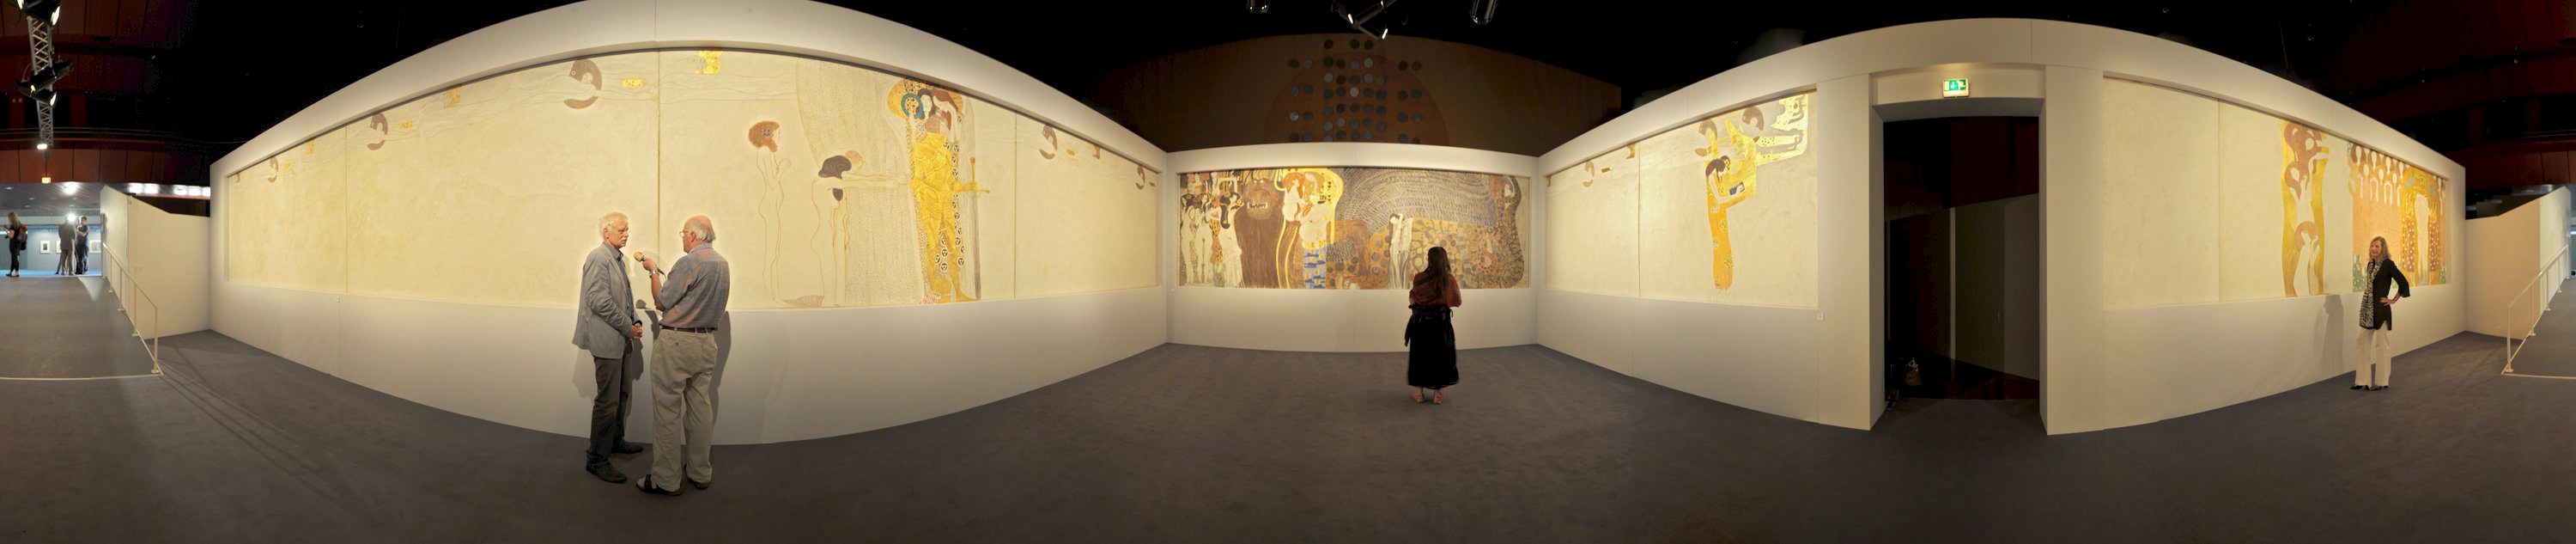 Reclaman la restitución del Friso de Beethoven de Klimt, expoliado por nazis